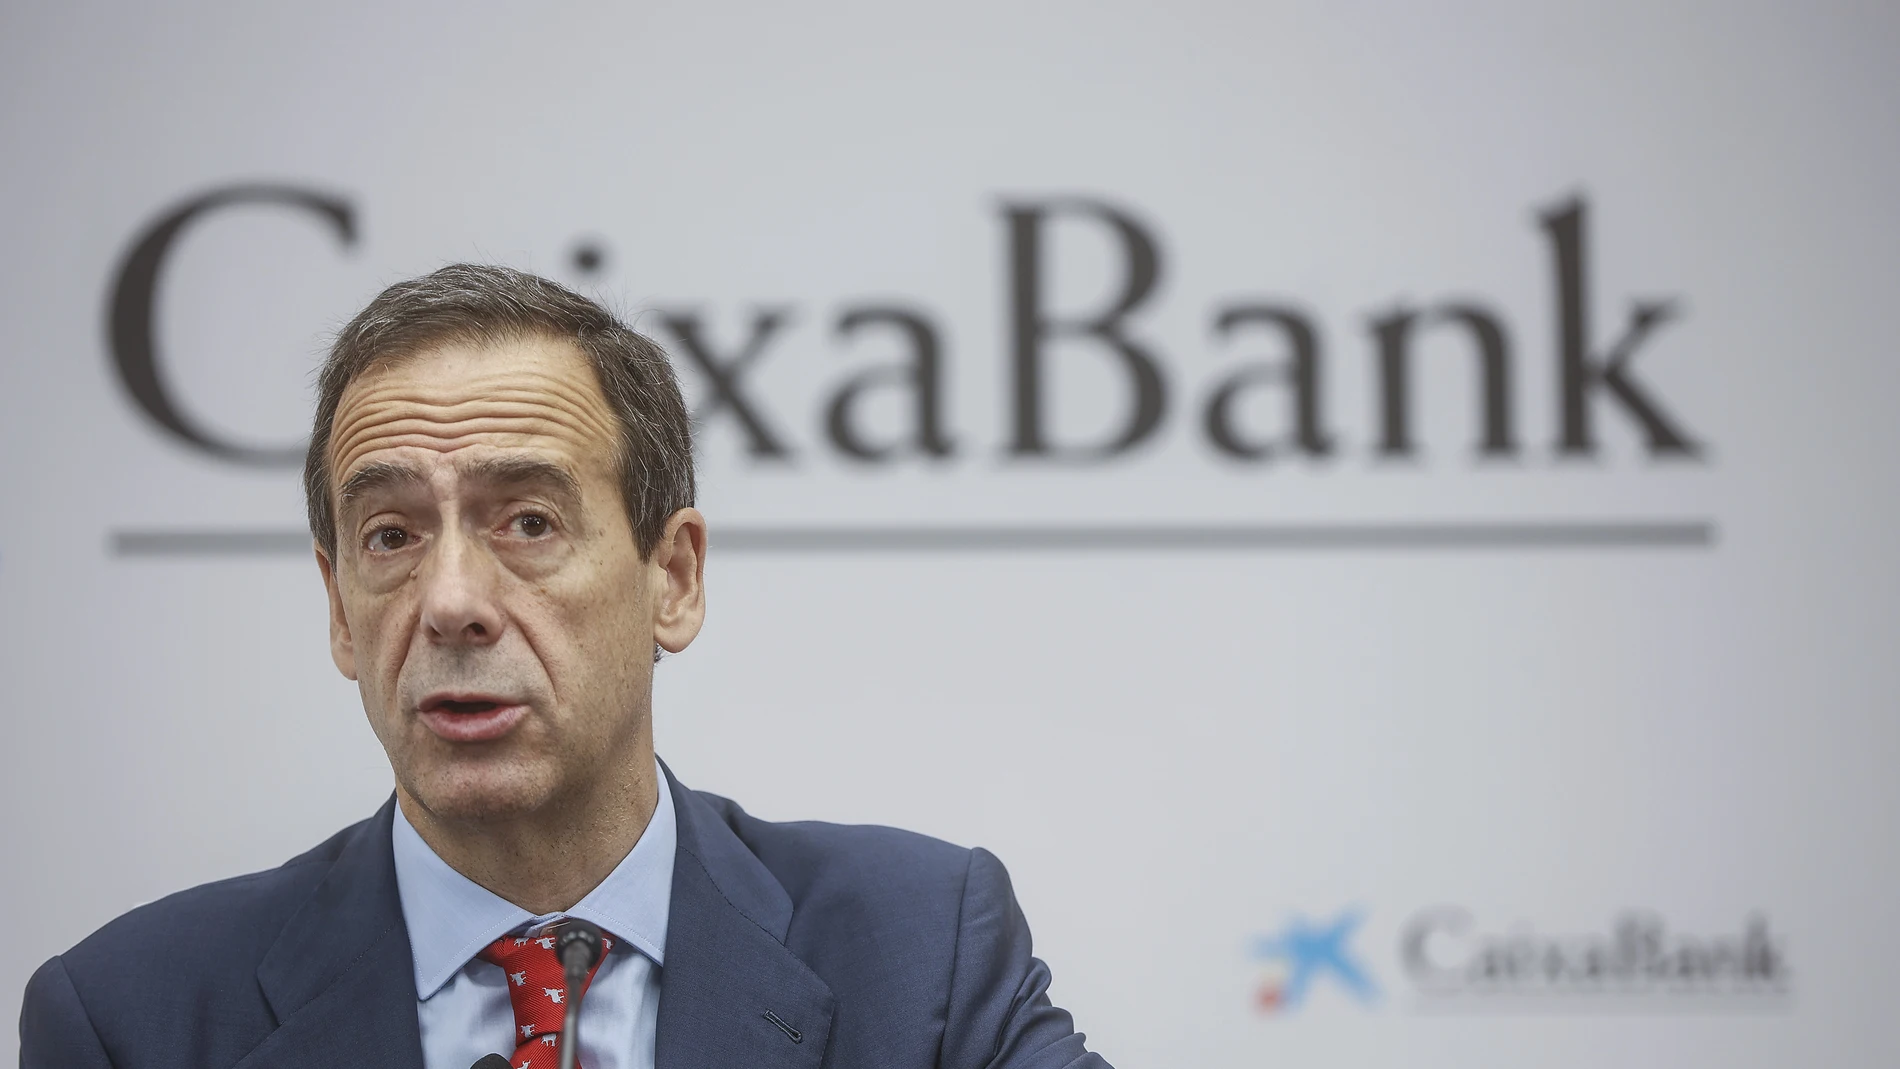 Economía.- CaixaBank lleva hoy a la junta nombrar consejero al ex-CEO de Siemens Peter Löscher y reelegir a Gortázar